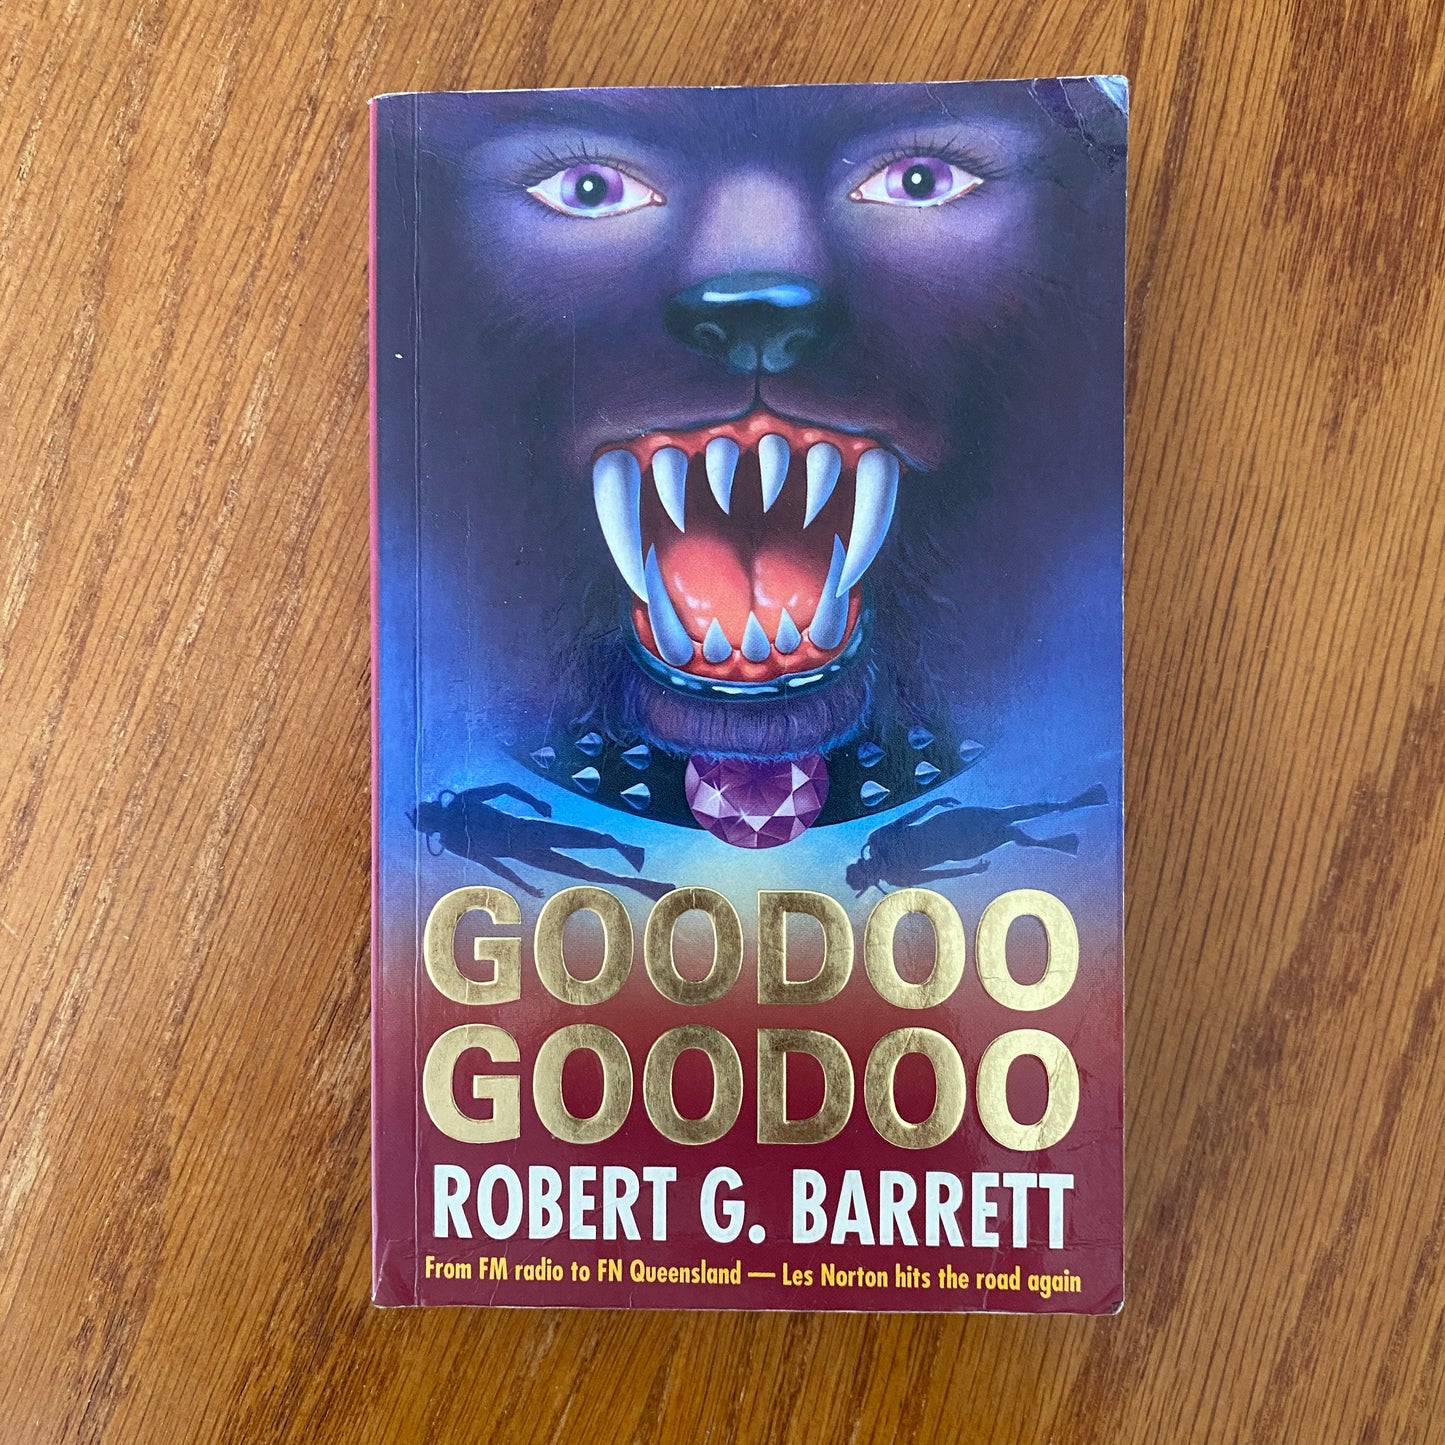 Goodoo Goodoo - Robert G. Barrett